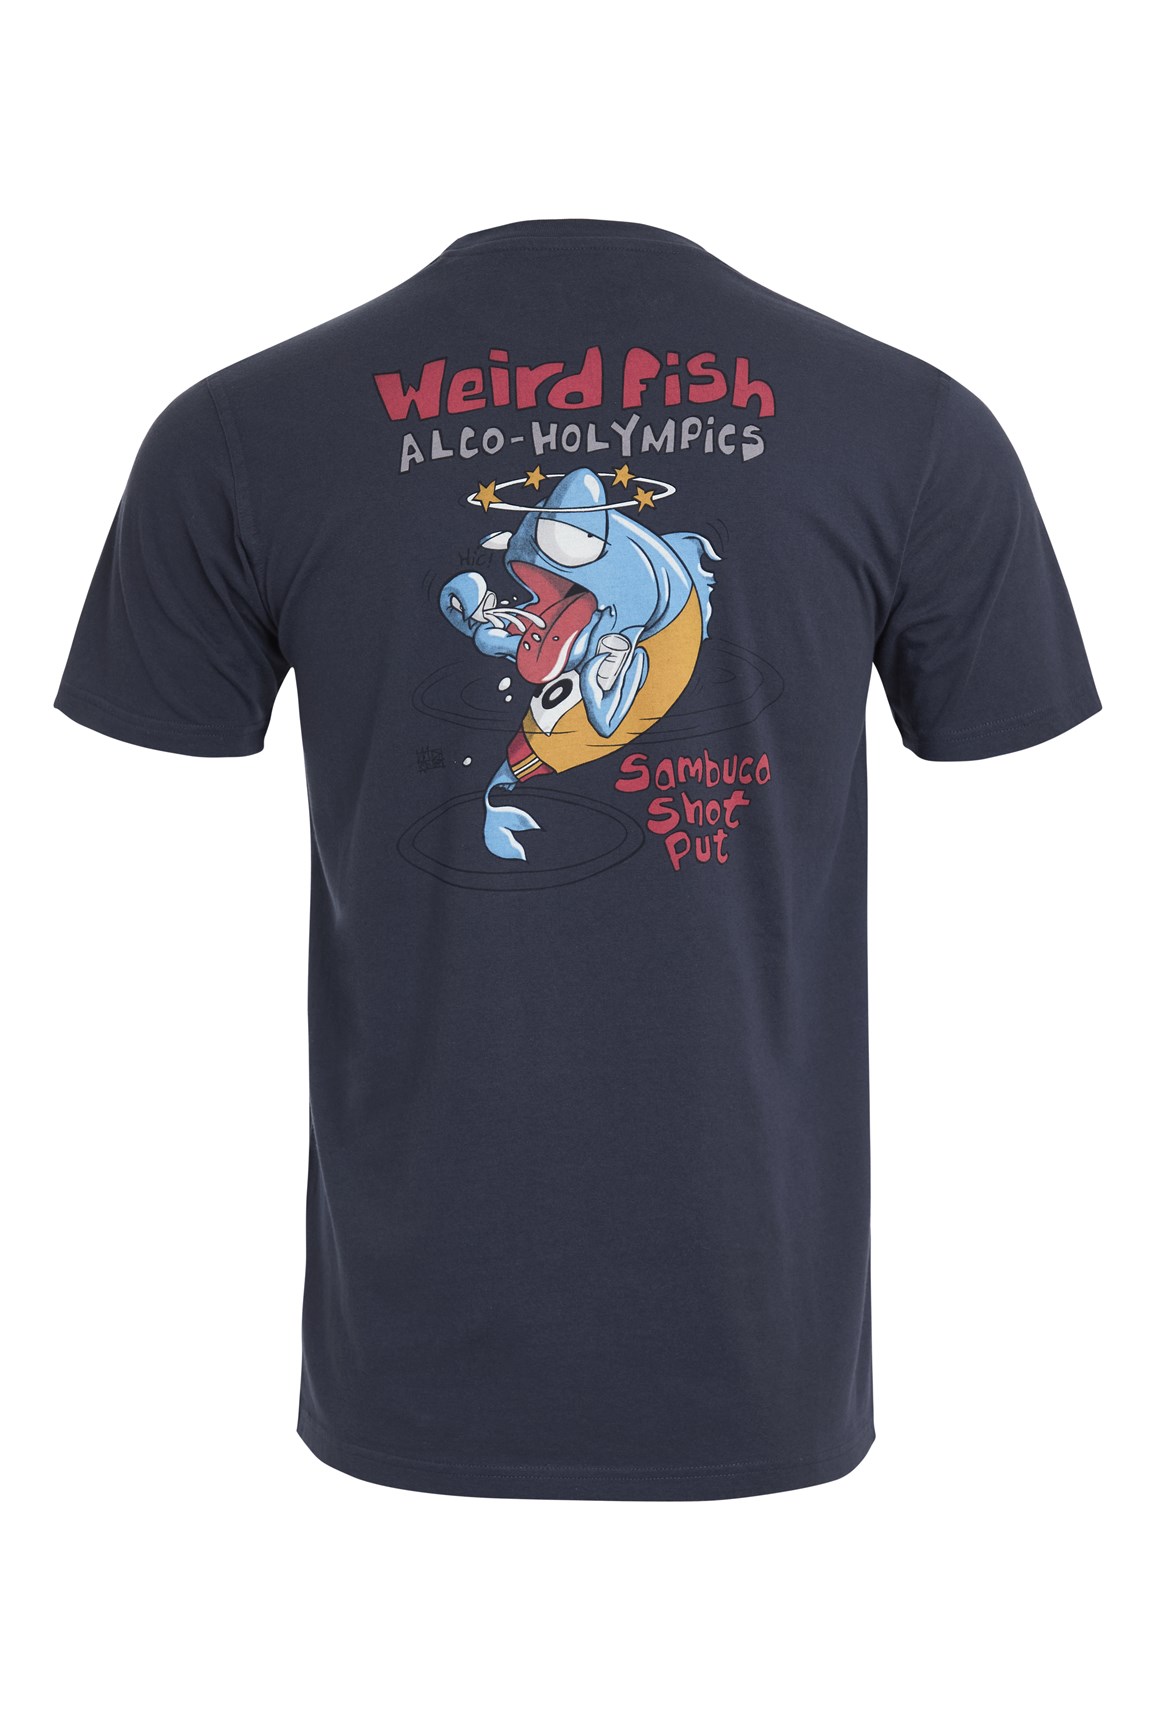 Weird Fish Sambuca Shot Organic Cotton Artist T-Shirt Navy Size XL